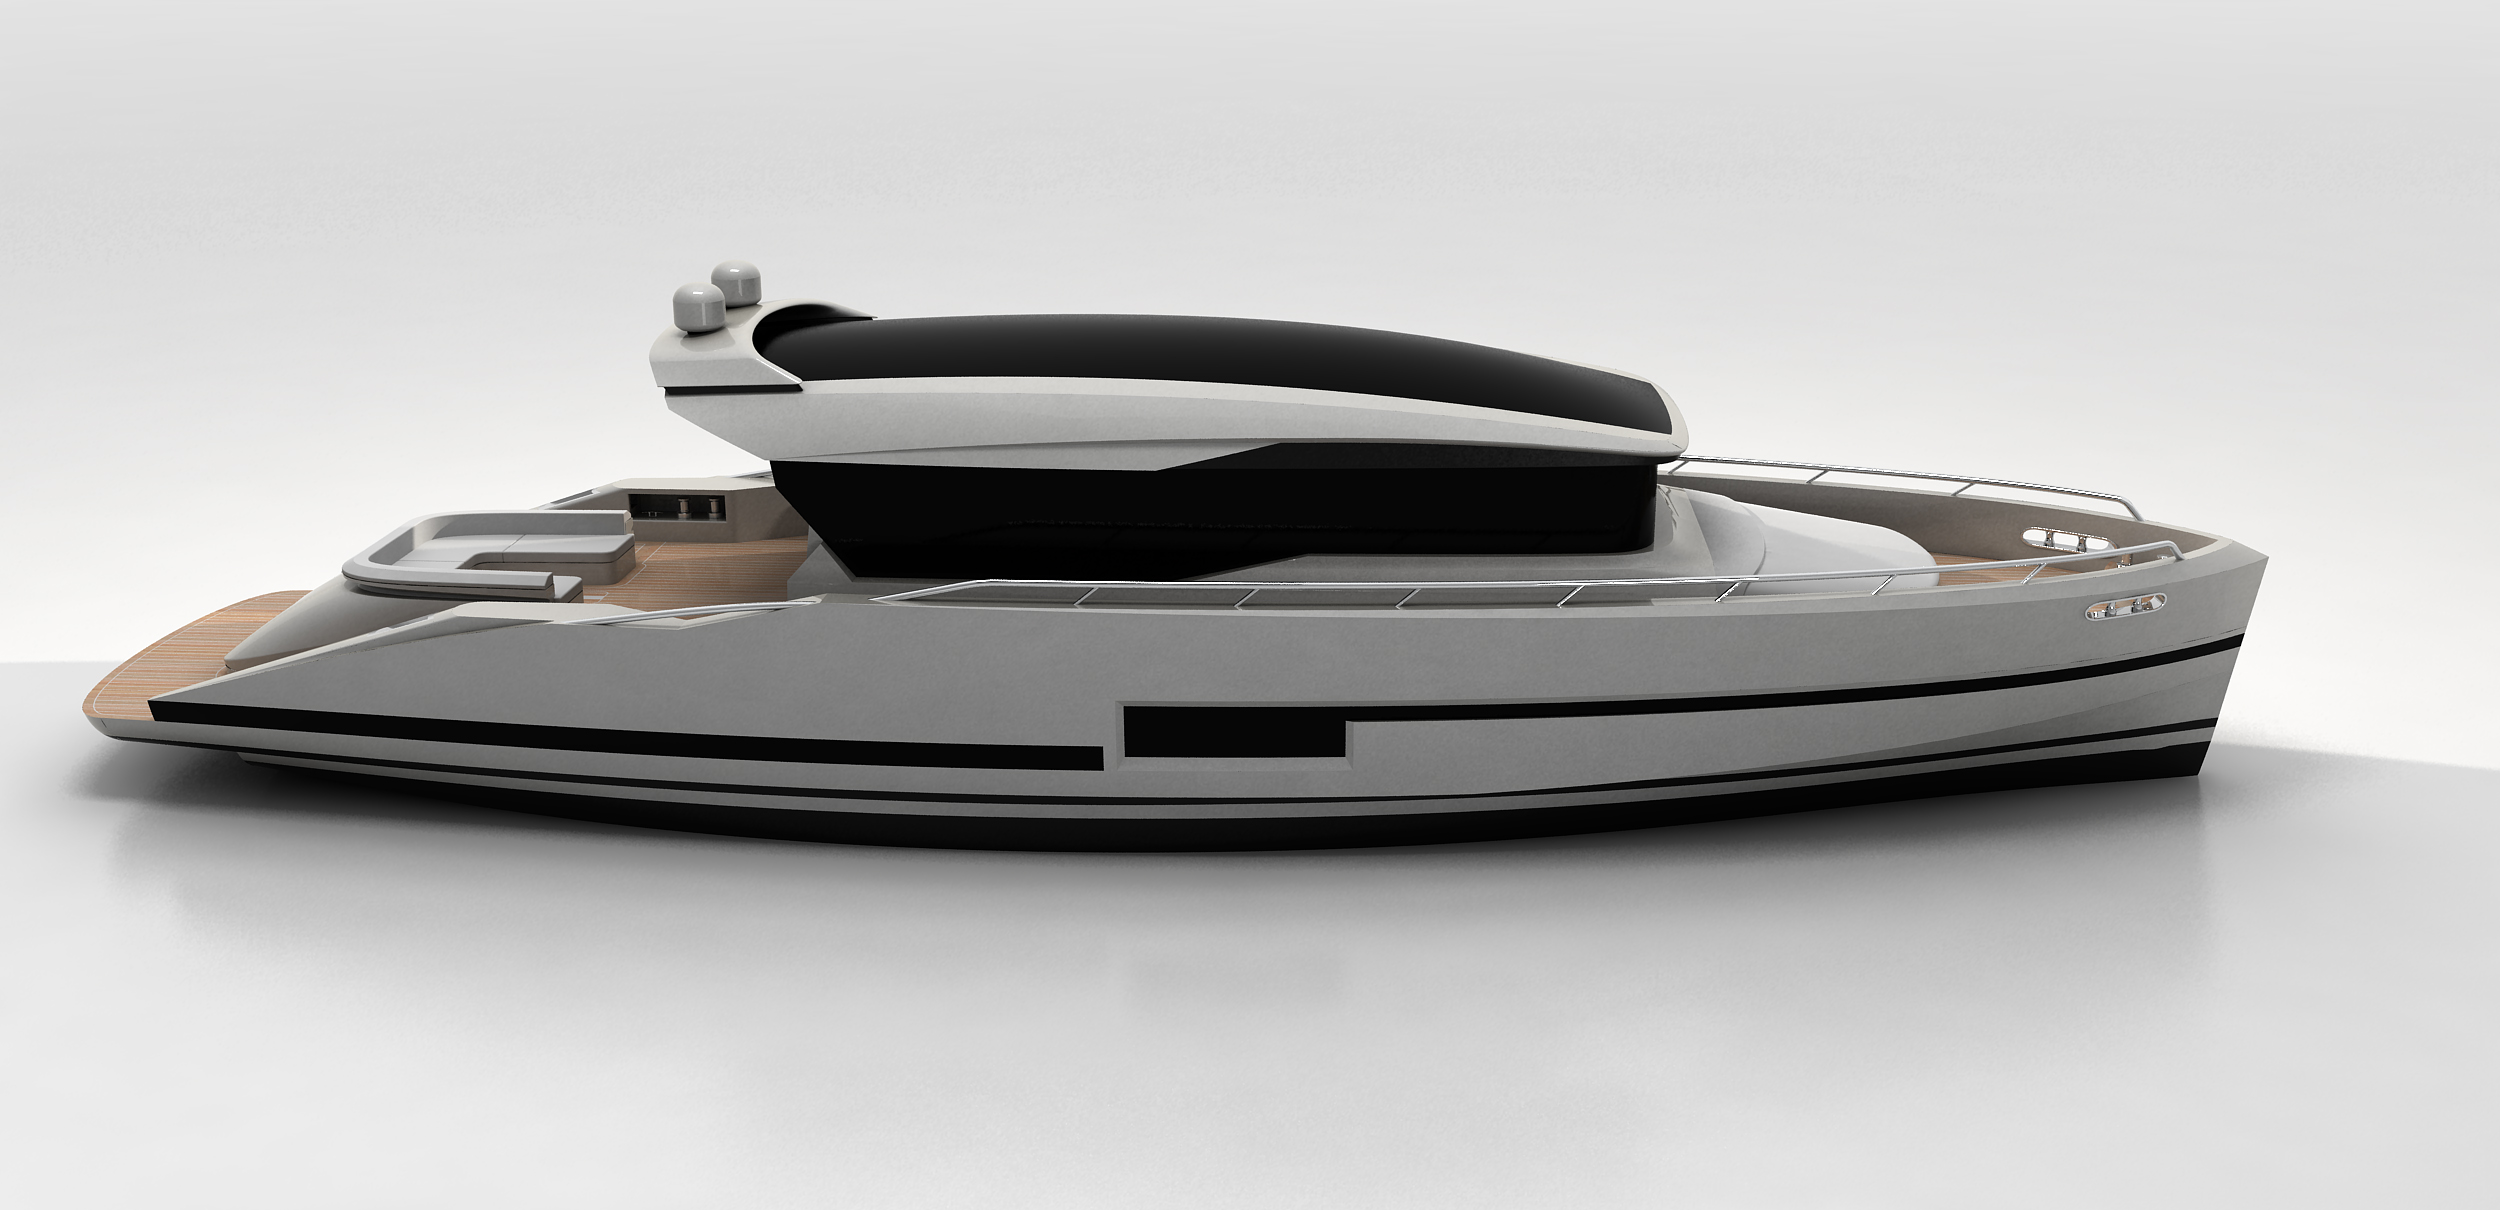  Architetti Design - GALATEA 56 Motor yacht by Pama Architetti Design